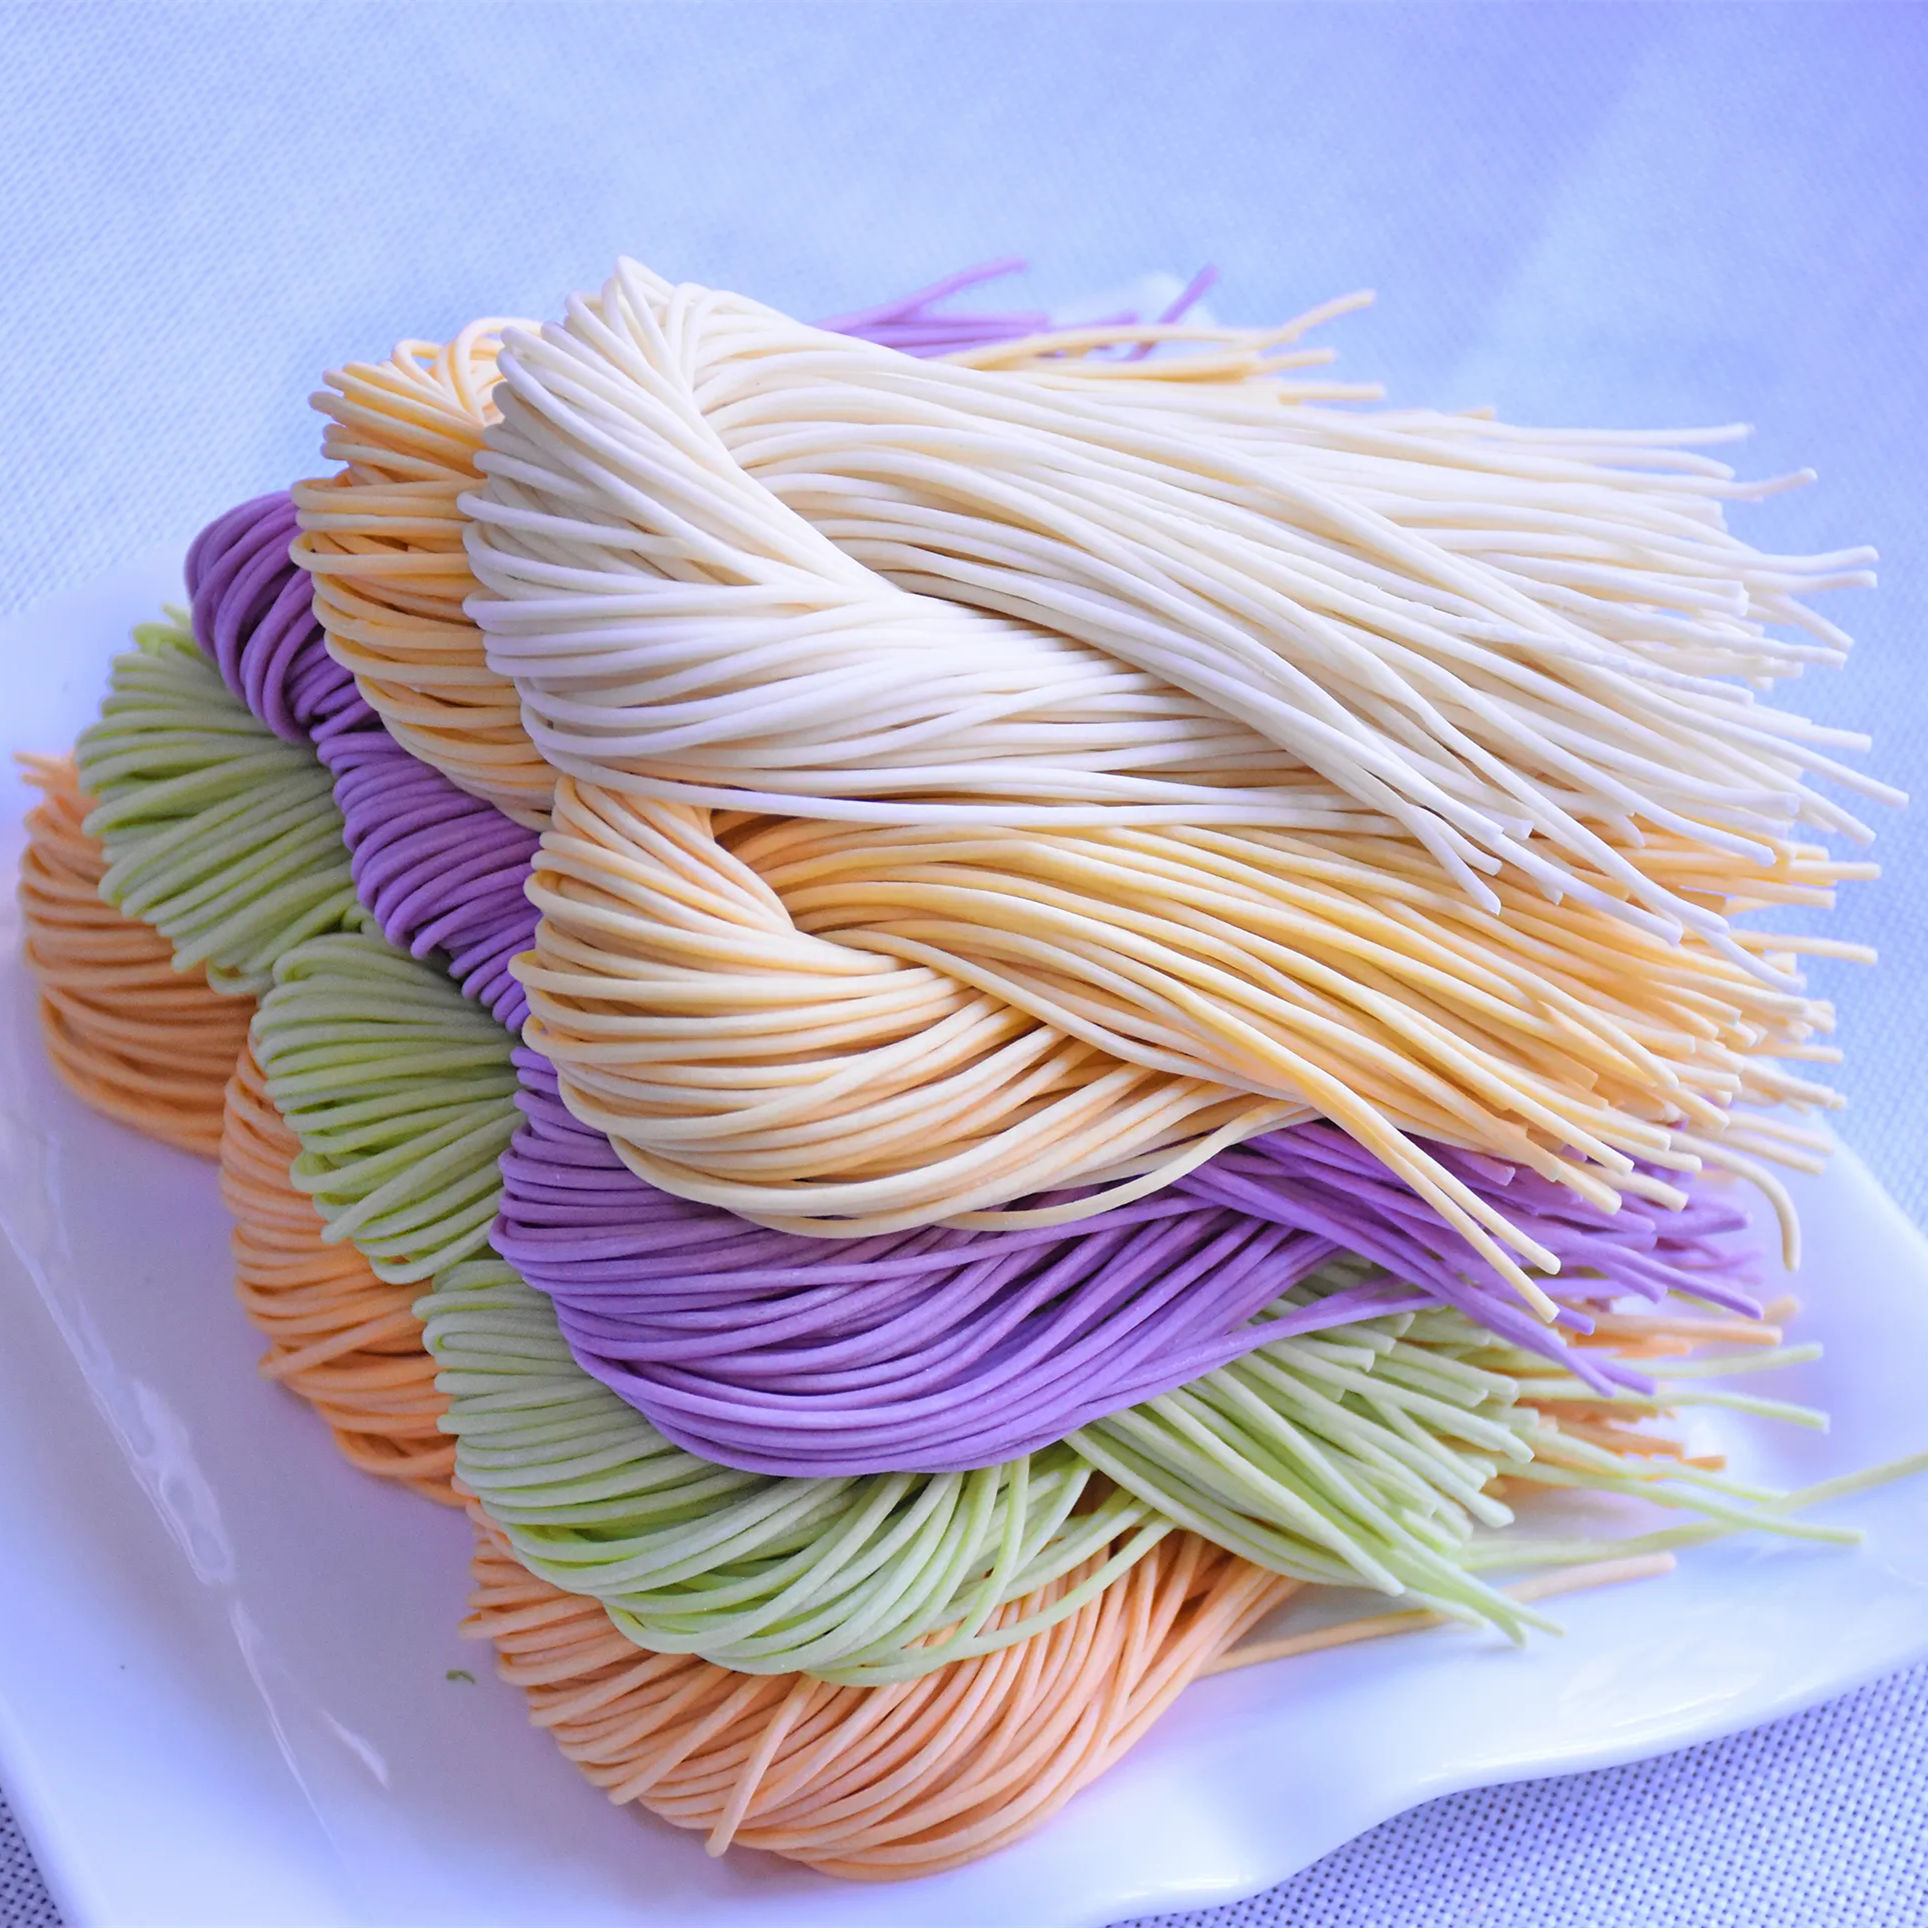 Semi-dry noodles